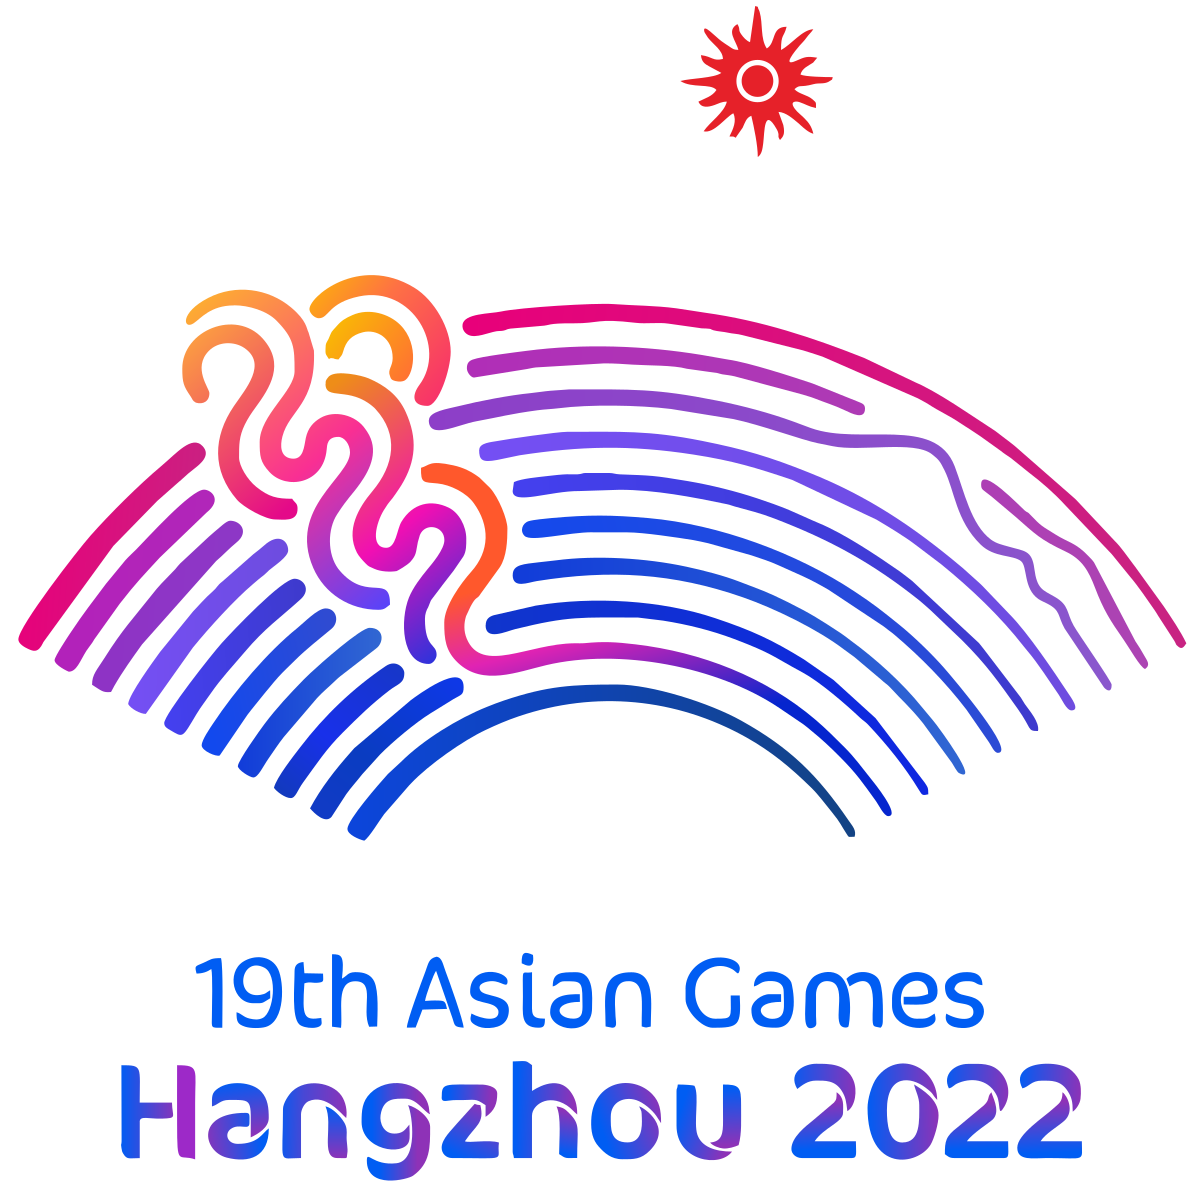 Asian games hangzhou 2022